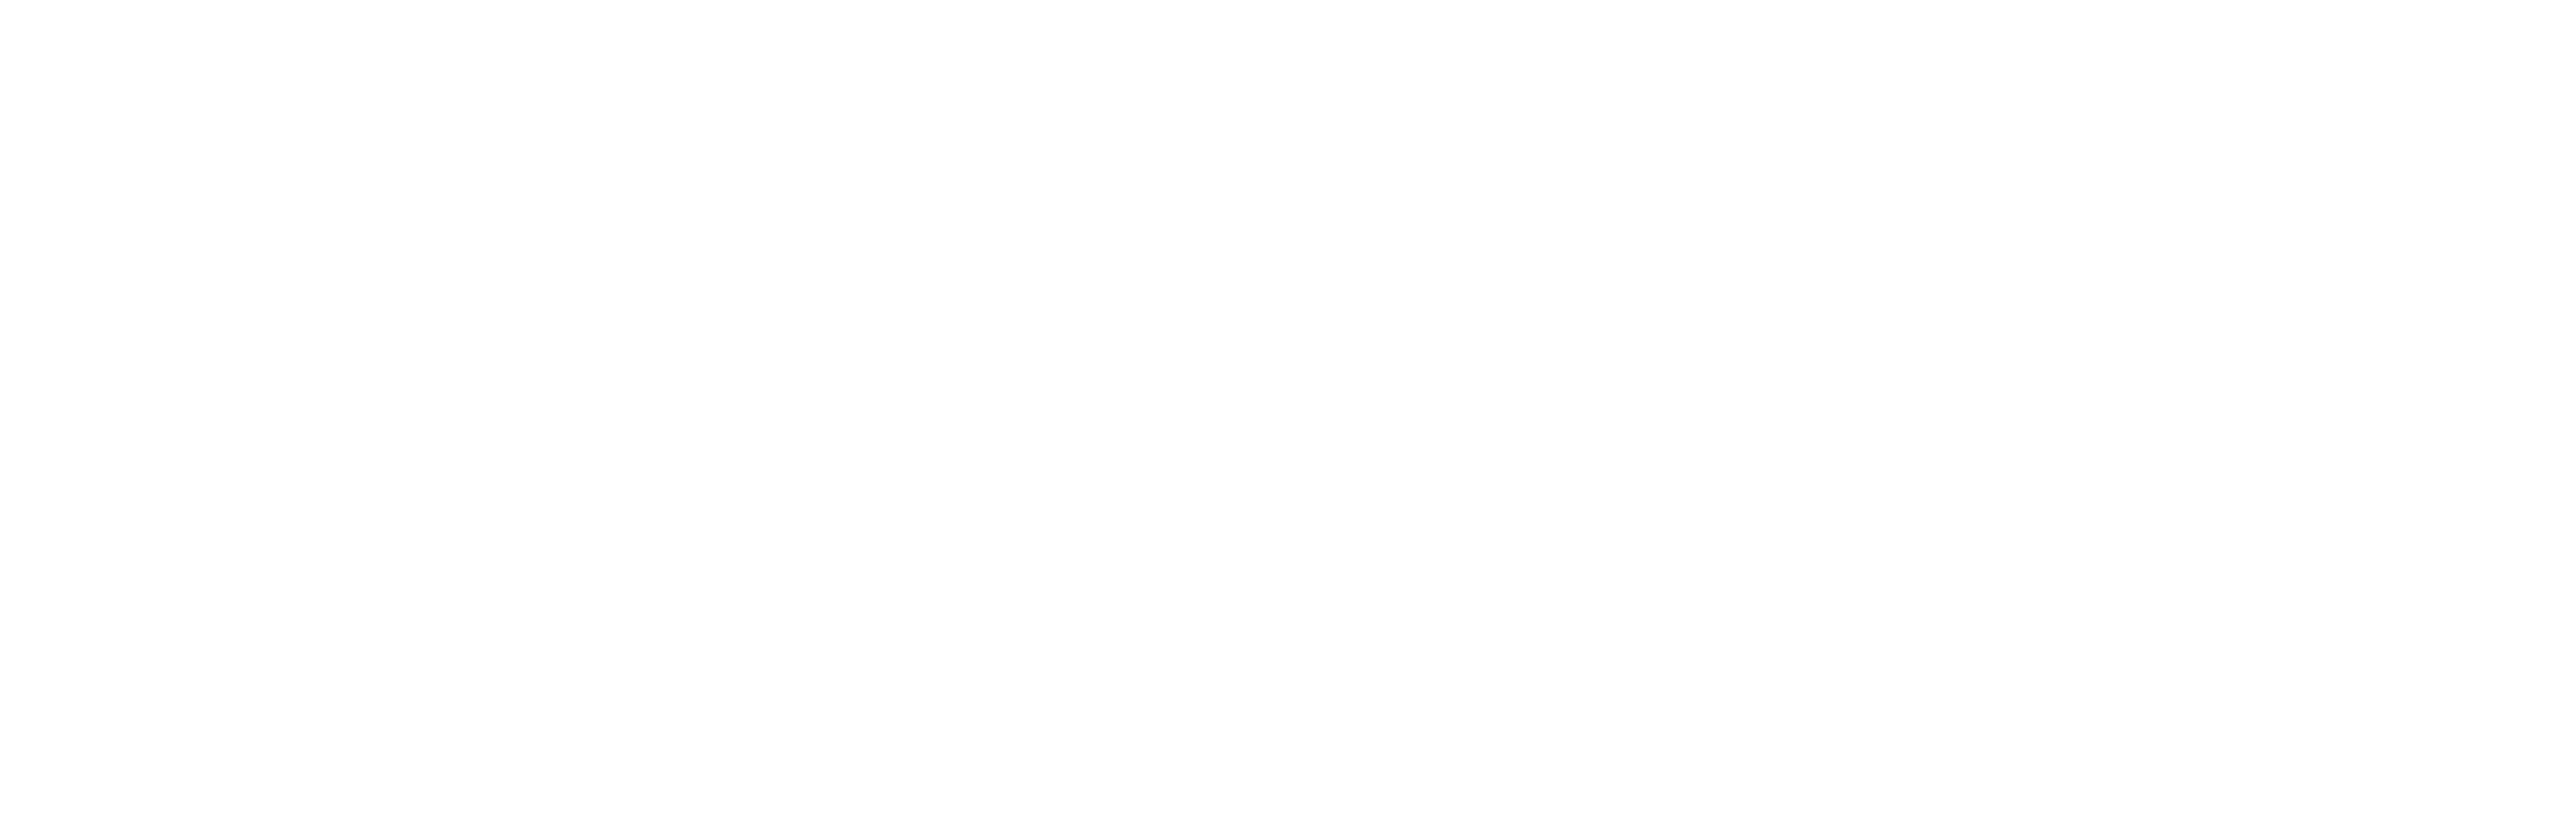 EveryMarket - Crunchbase Company Profile & Funding